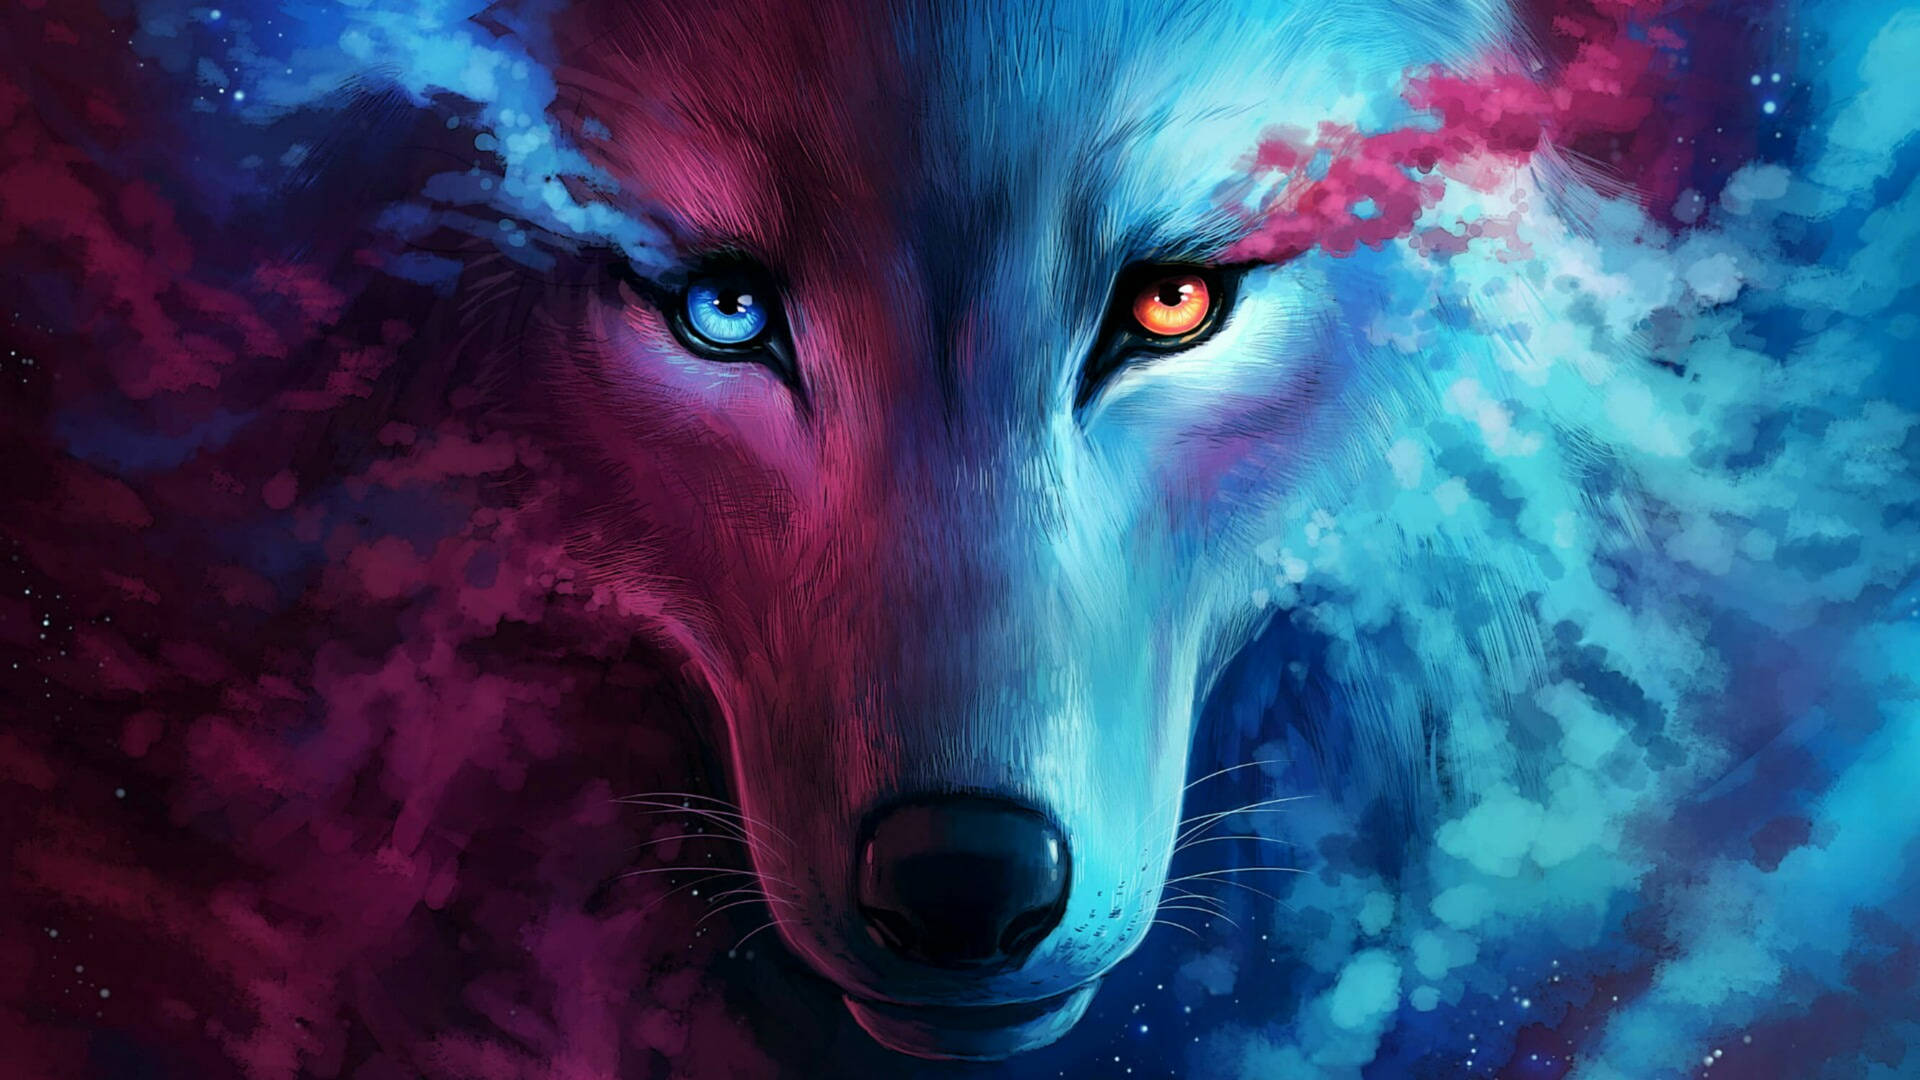 Pink blue wolf fierce eyes fantasy art wallpaper.